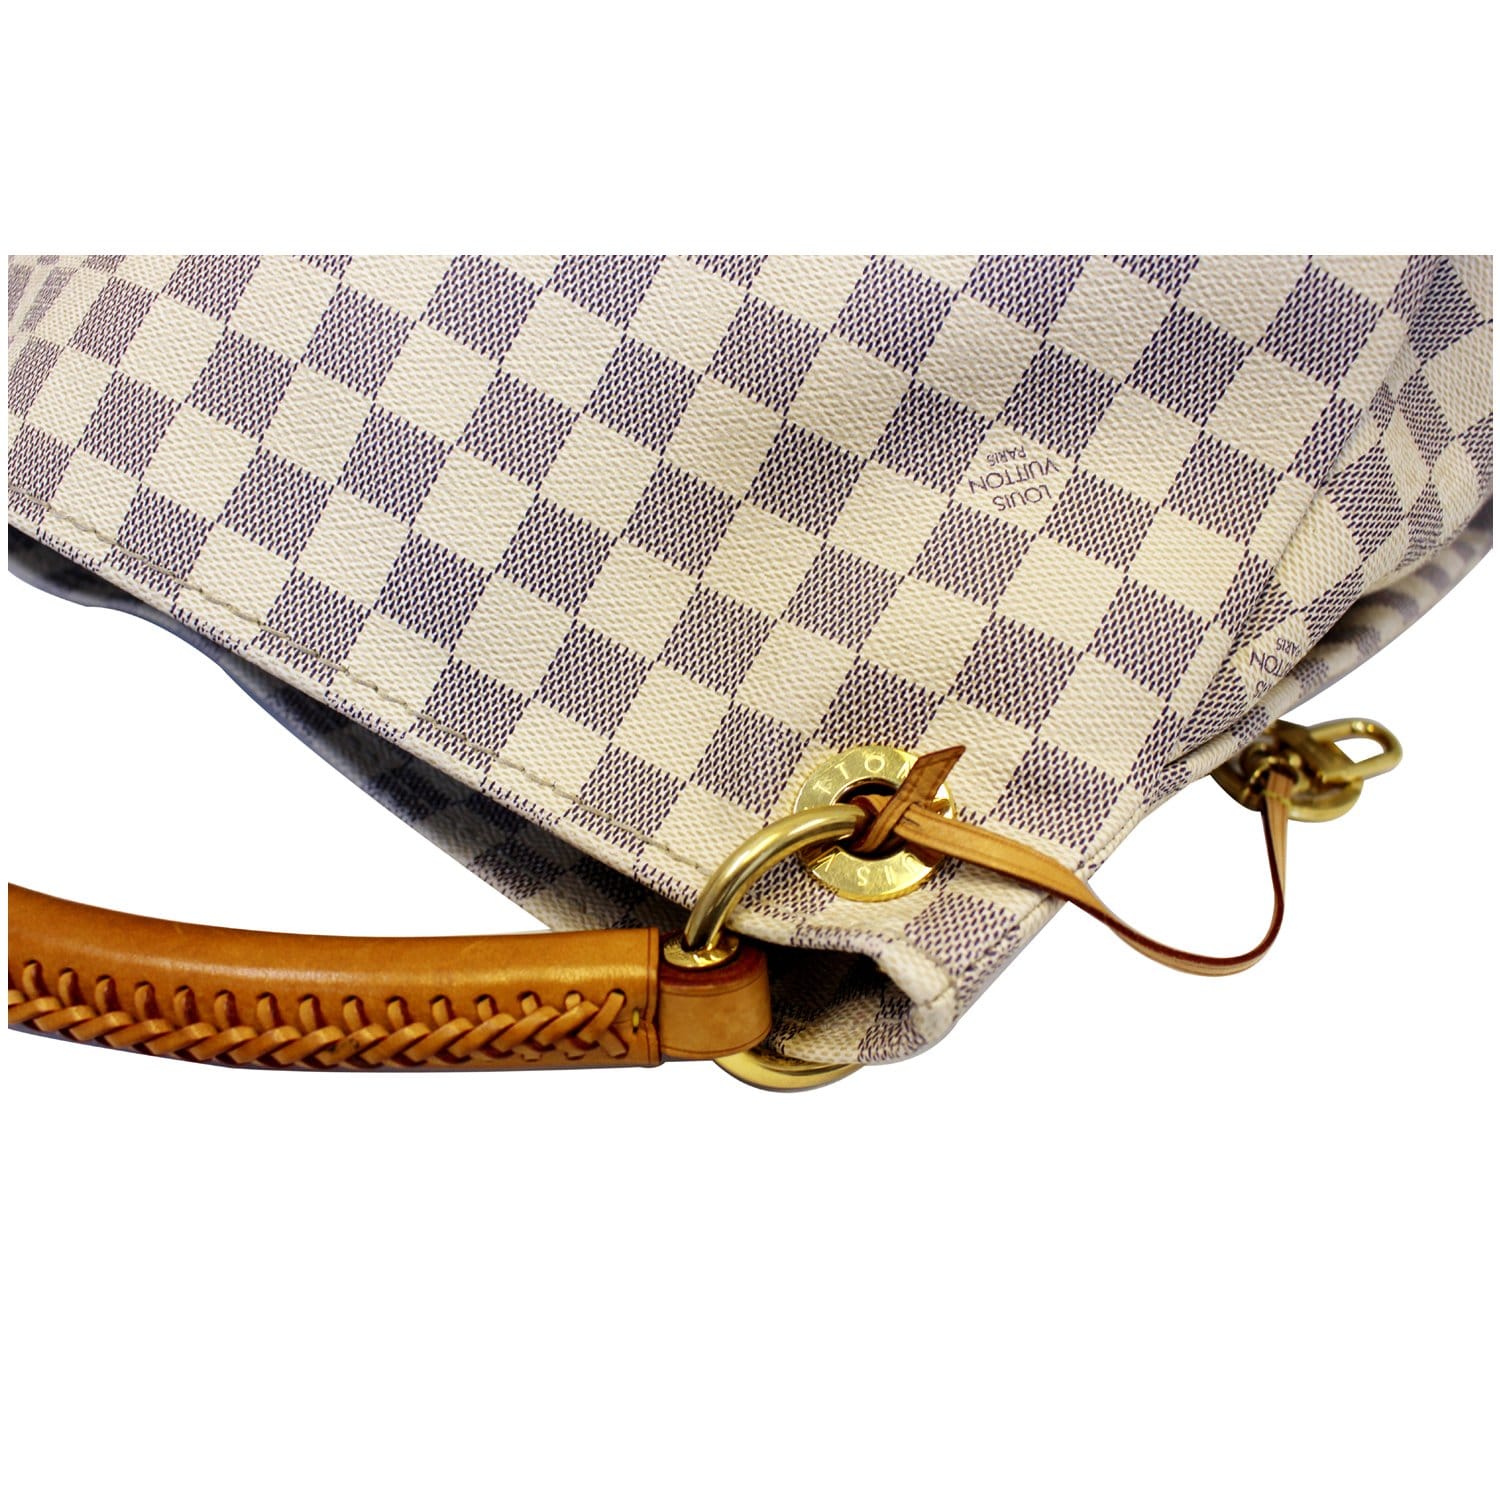 Louis Vuitton Damier Azur Delightful MM - White Shoulder Bags